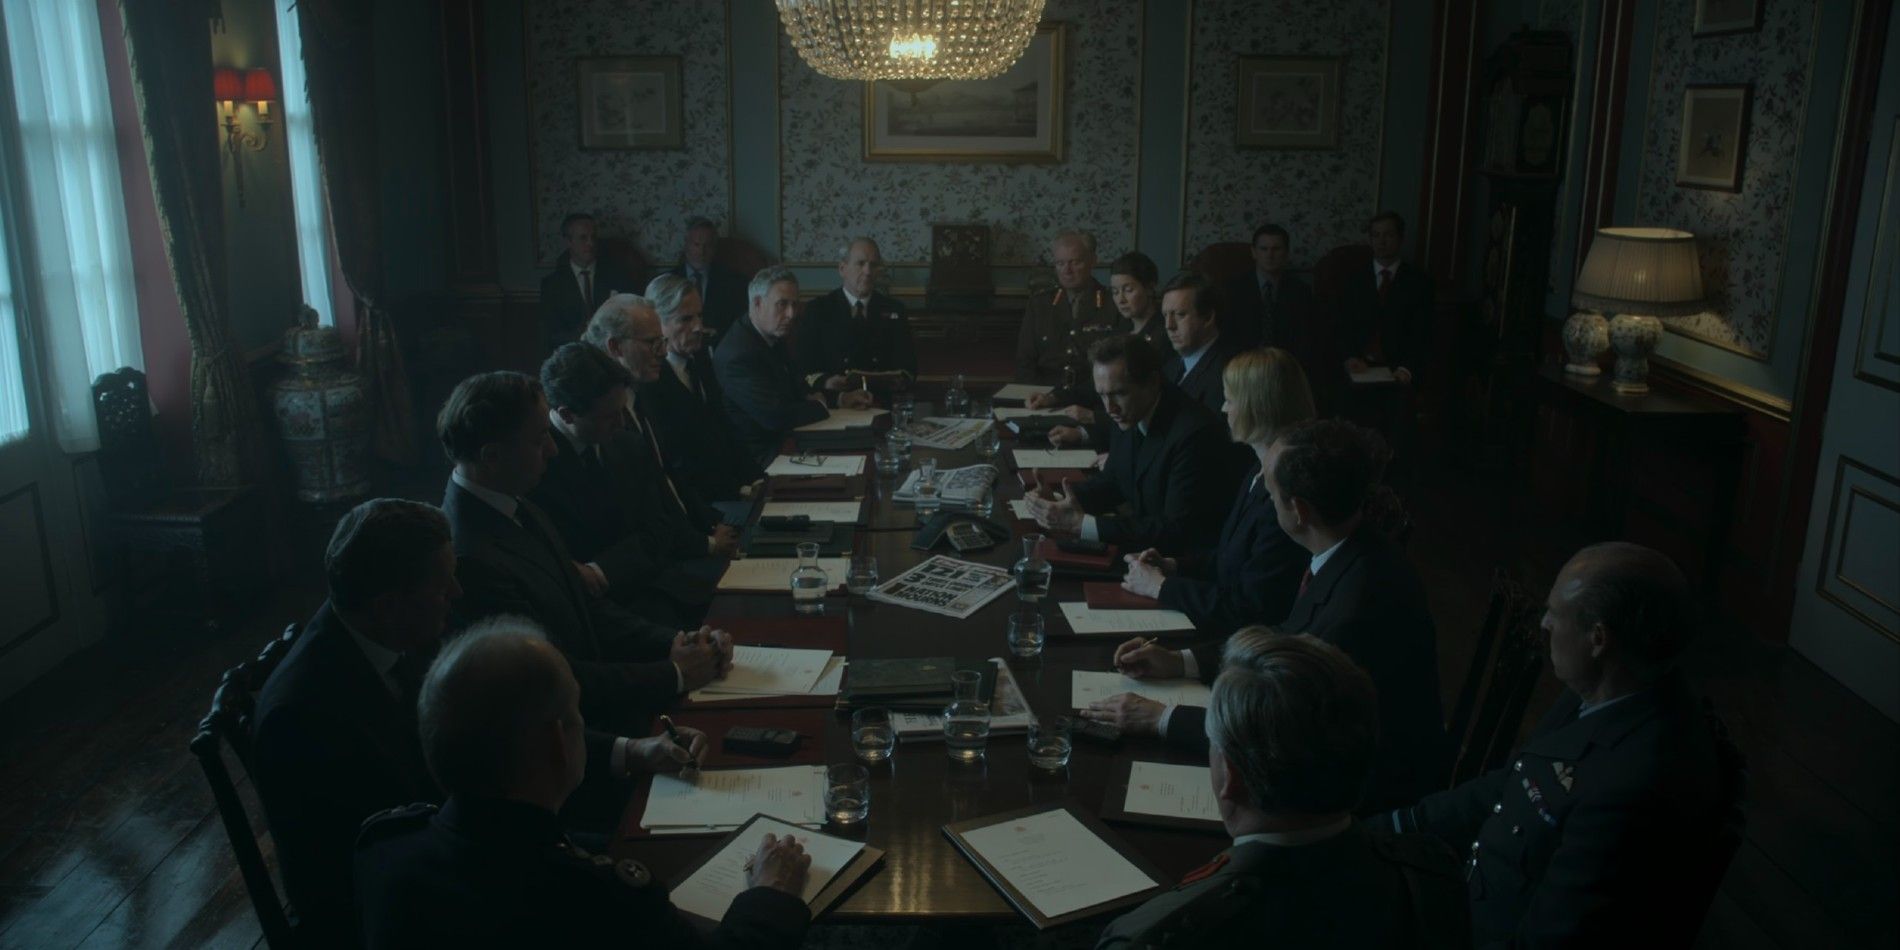 El primer ministro de Tony Blair se reúne en una mesa redonda con otros en la temporada 6 de The Crwon